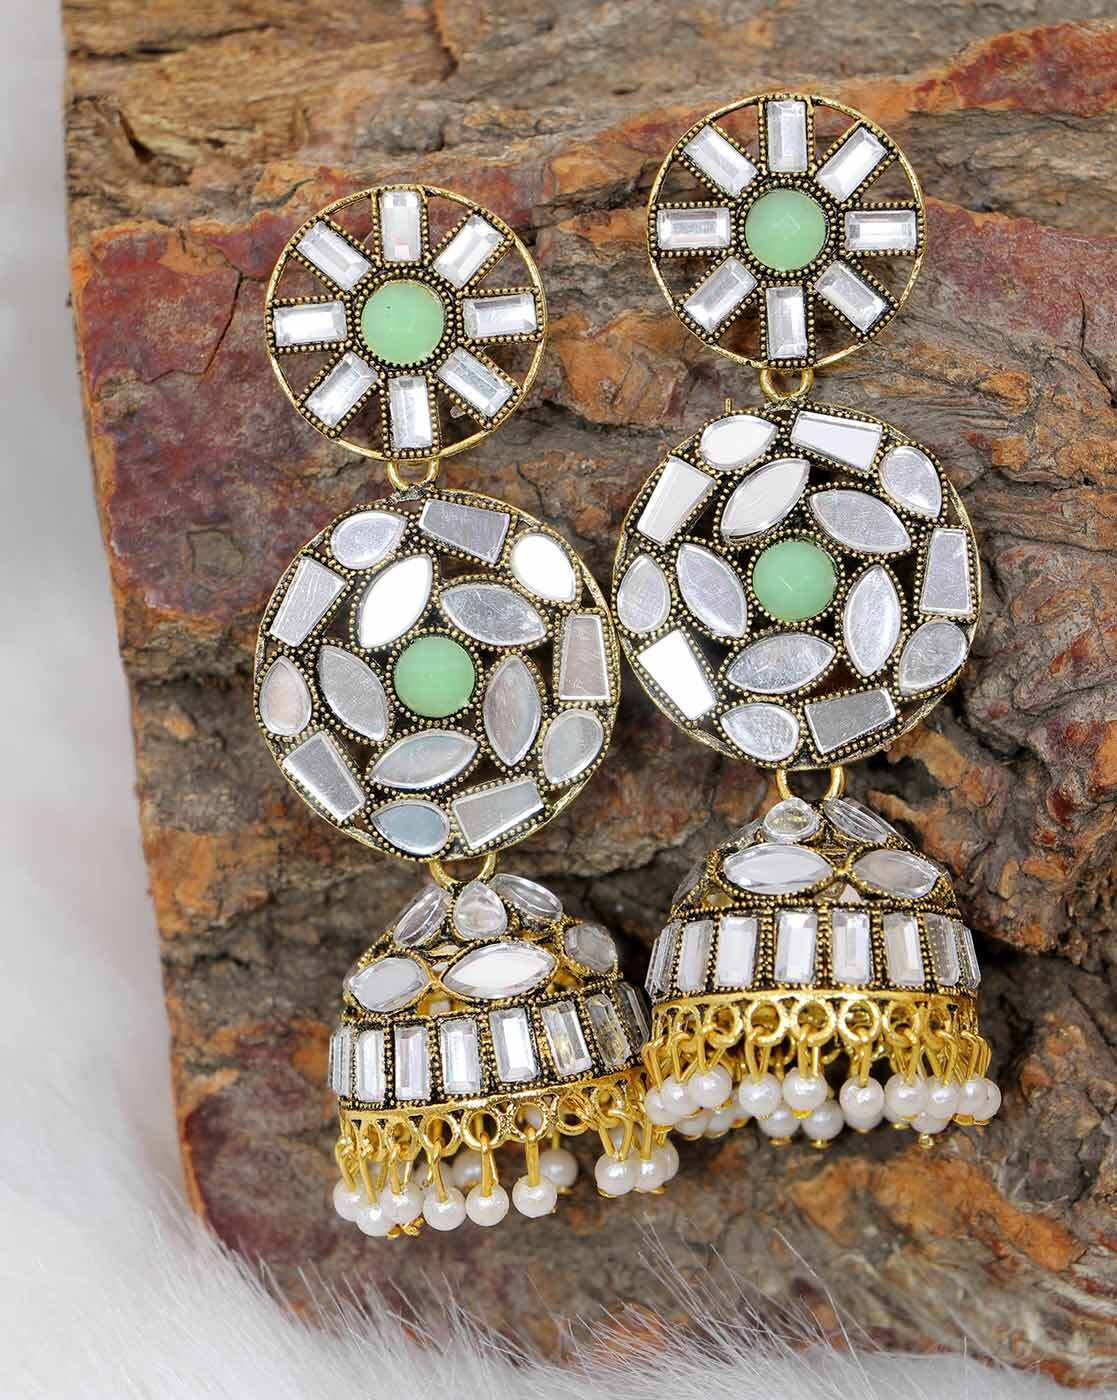 Meenakari earrings – Aabharana